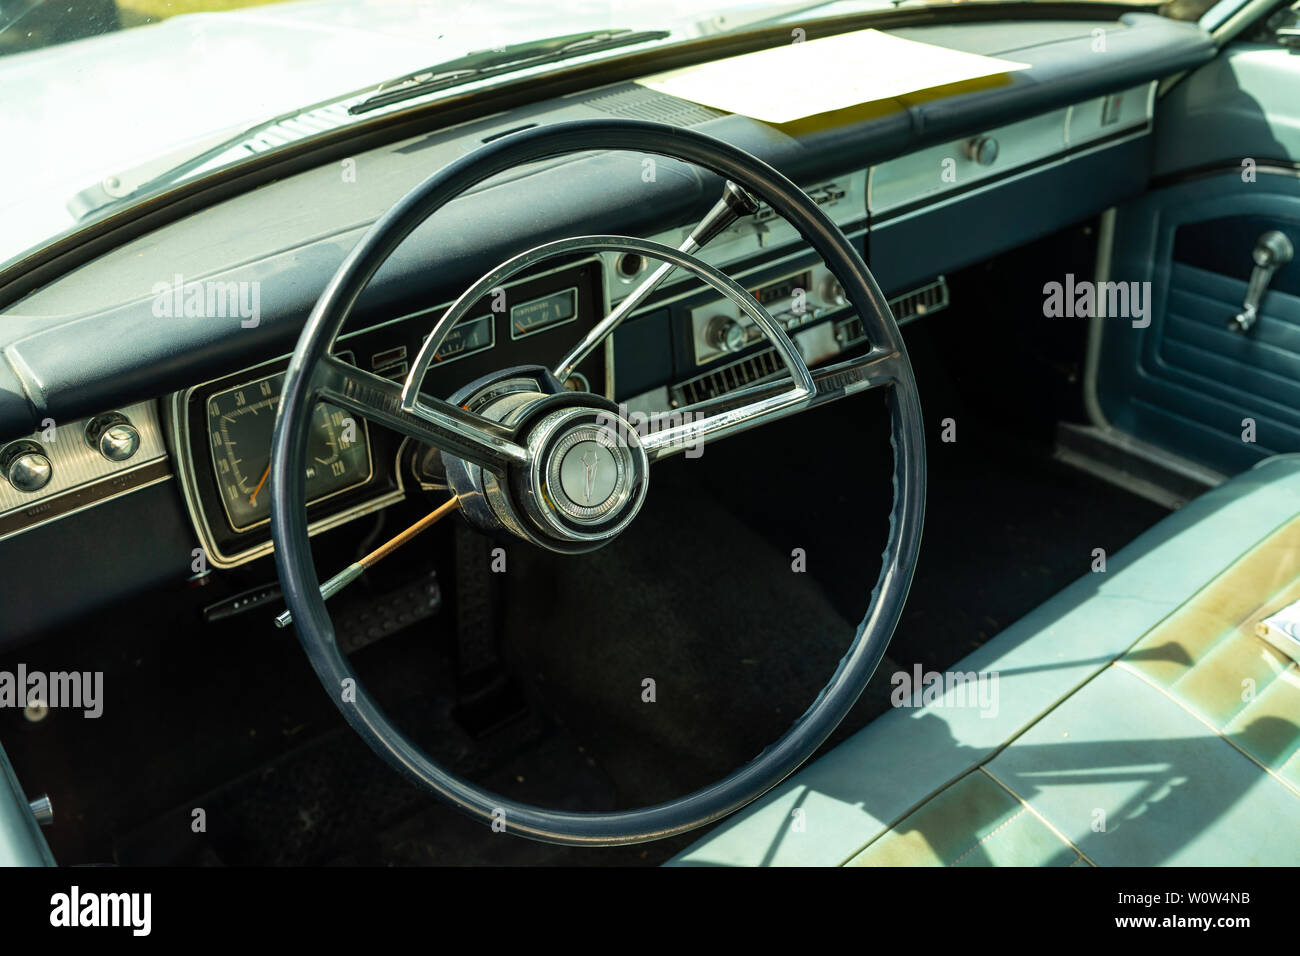 PAAREN IM GLIEN, ALLEMAGNE - le 19 mai 2018 : Intérieur d'une voiture compacte Plymouth Valiant 200, 1966. Exposition 'Die Oldtimer Show 2018'. Banque D'Images